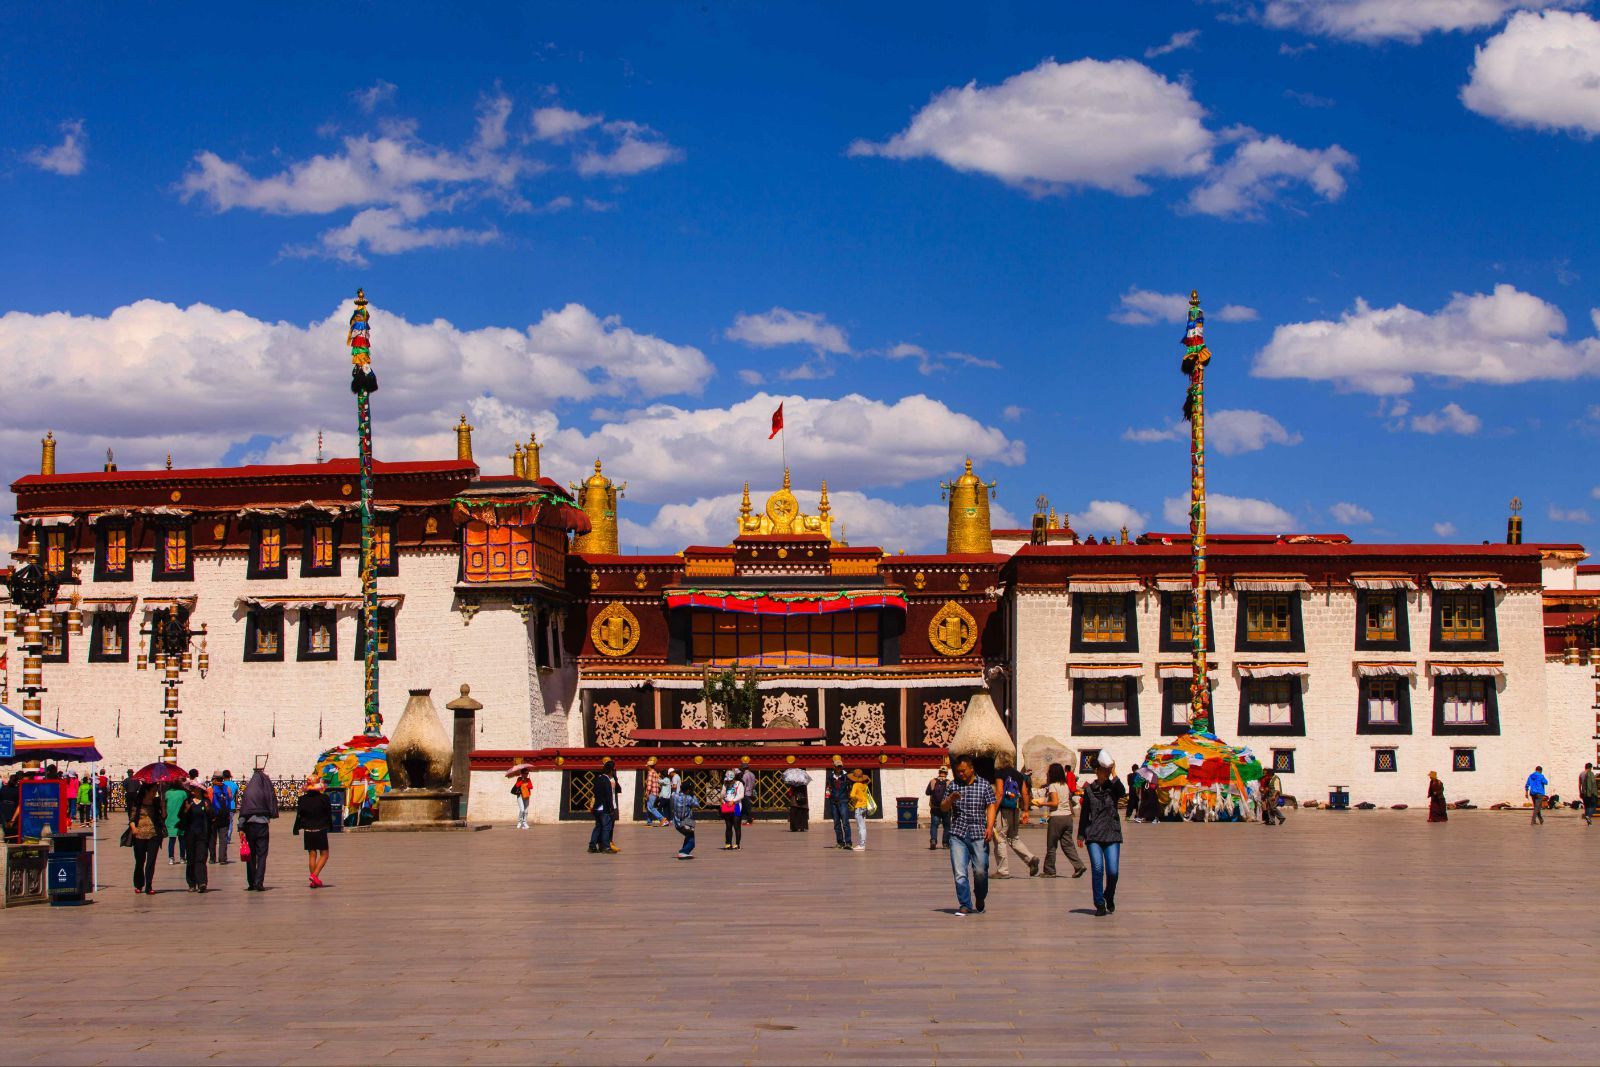 旅行 雪域瑰宝之称的布达拉宫,藏佛教起源圣地大昭寺,日光圣城拉萨,藏